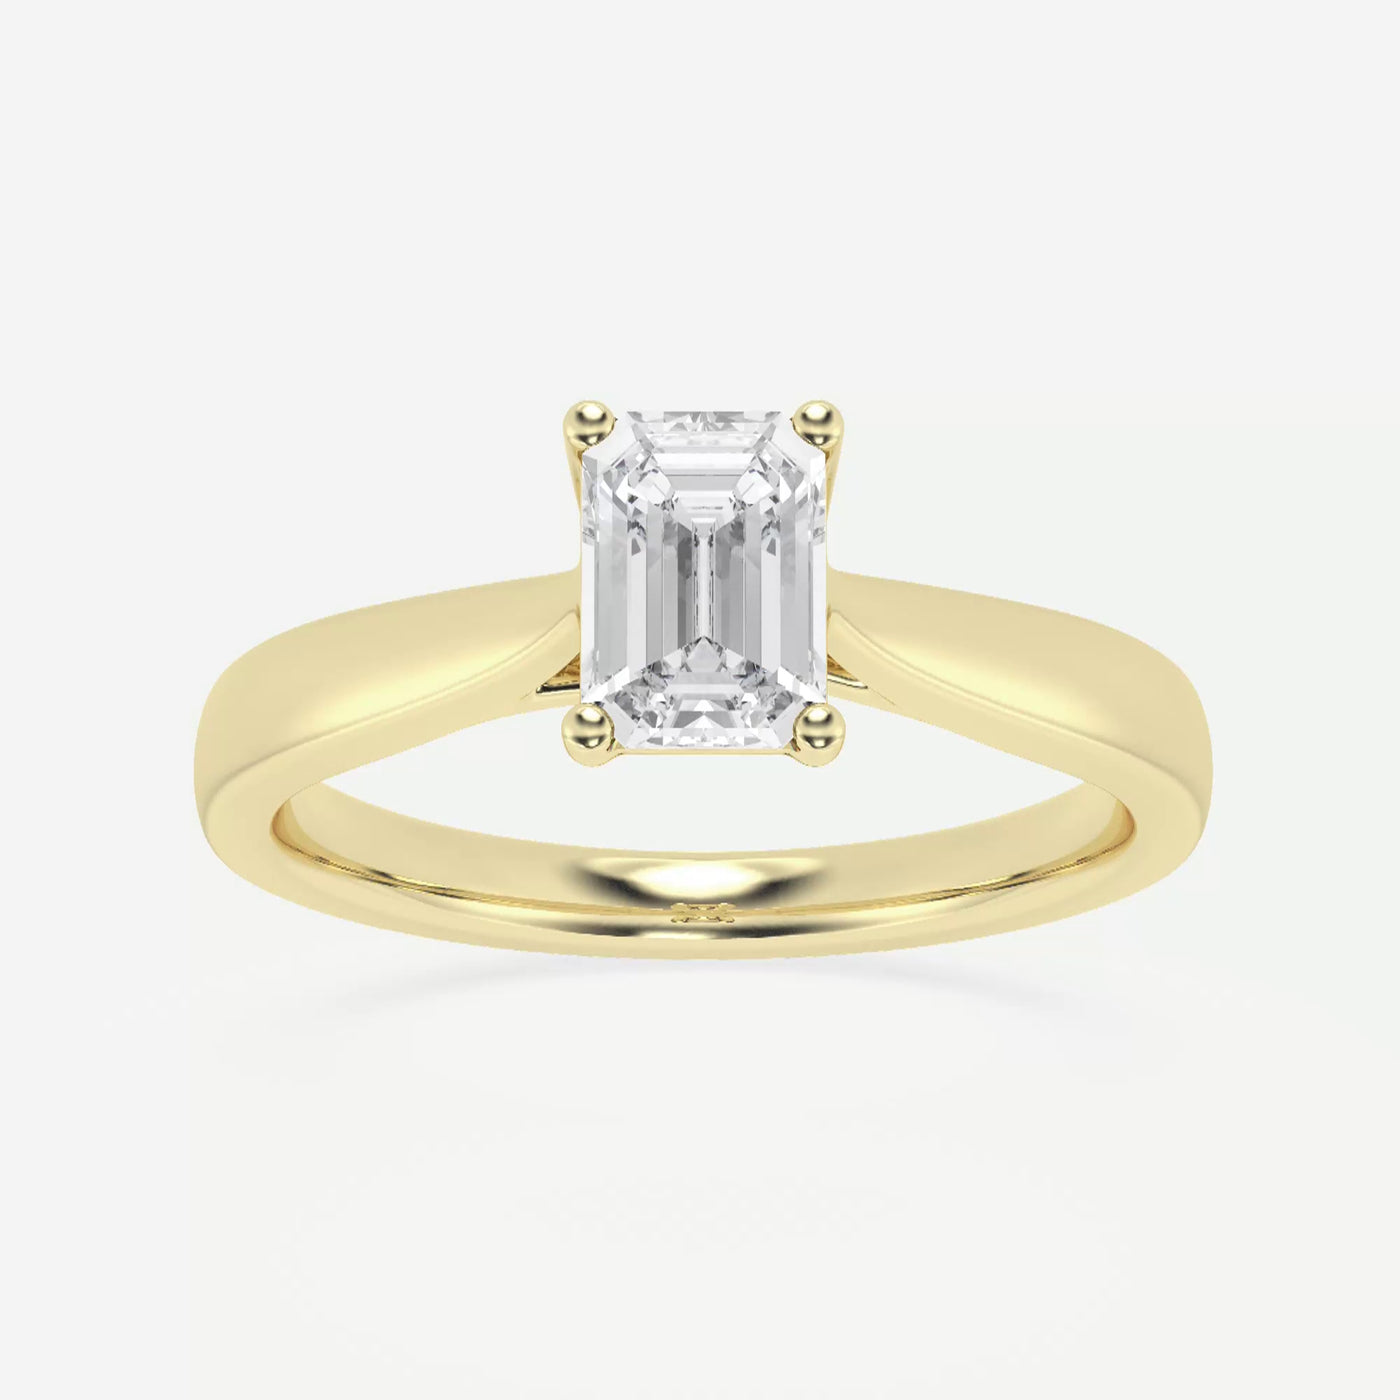 _main_image@SKU:LGD-JOR1033-GY4~#carat_1.00#diamond-quality_fg,-vs2+#metal_18k-yellow-gold